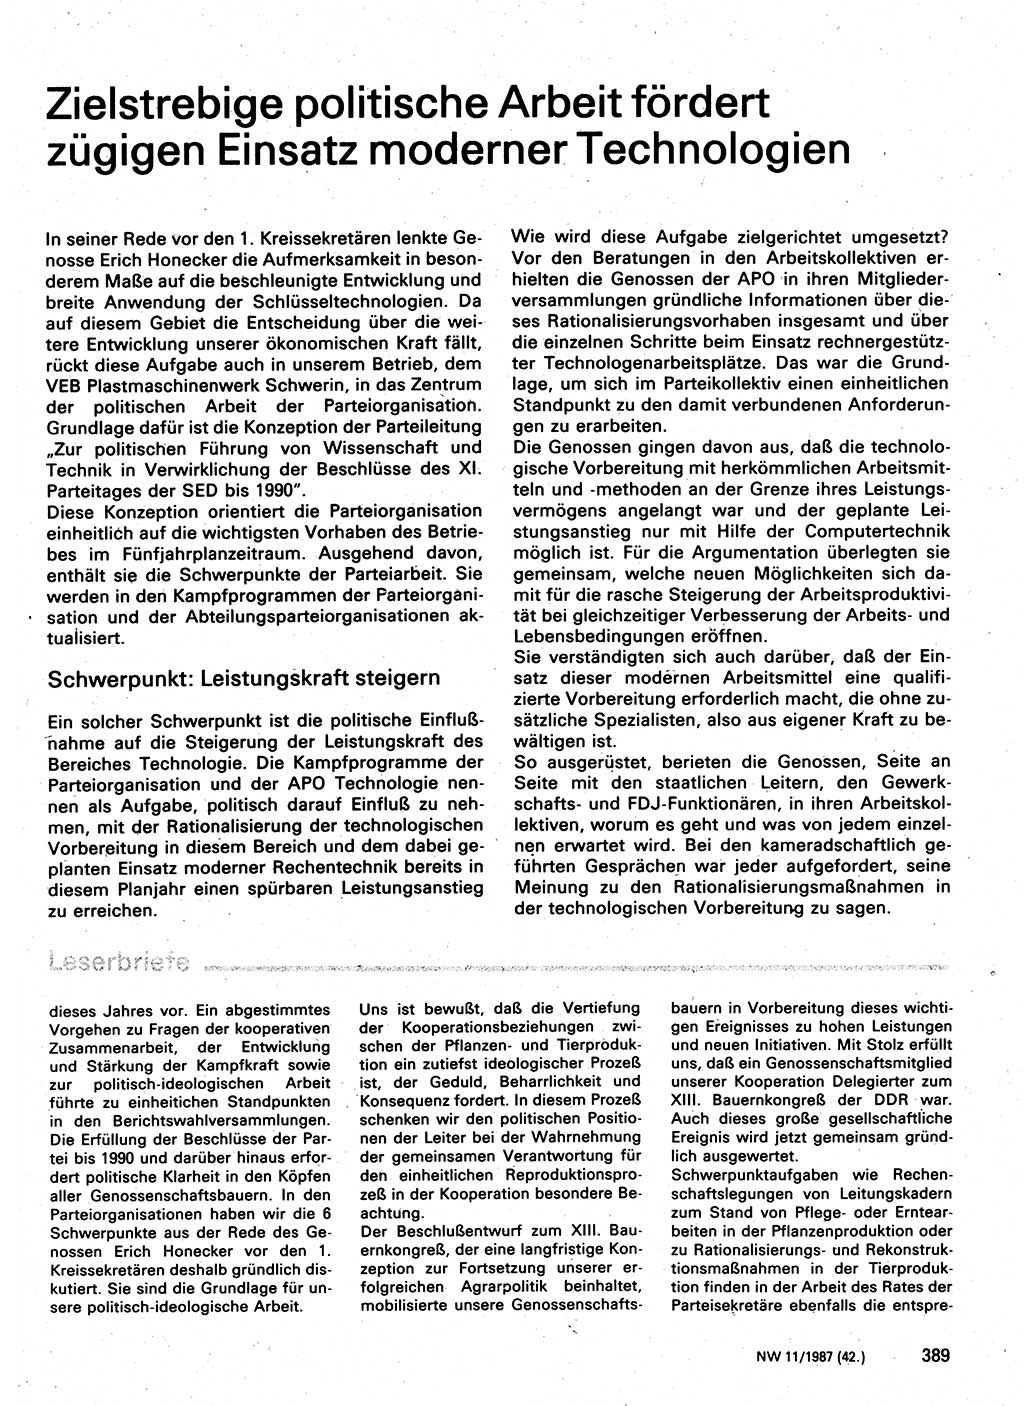 Neuer Weg (NW), Organ des Zentralkomitees (ZK) der SED (Sozialistische Einheitspartei Deutschlands) für Fragen des Parteilebens, 42. Jahrgang [Deutsche Demokratische Republik (DDR)] 1987, Seite 389 (NW ZK SED DDR 1987, S. 389)